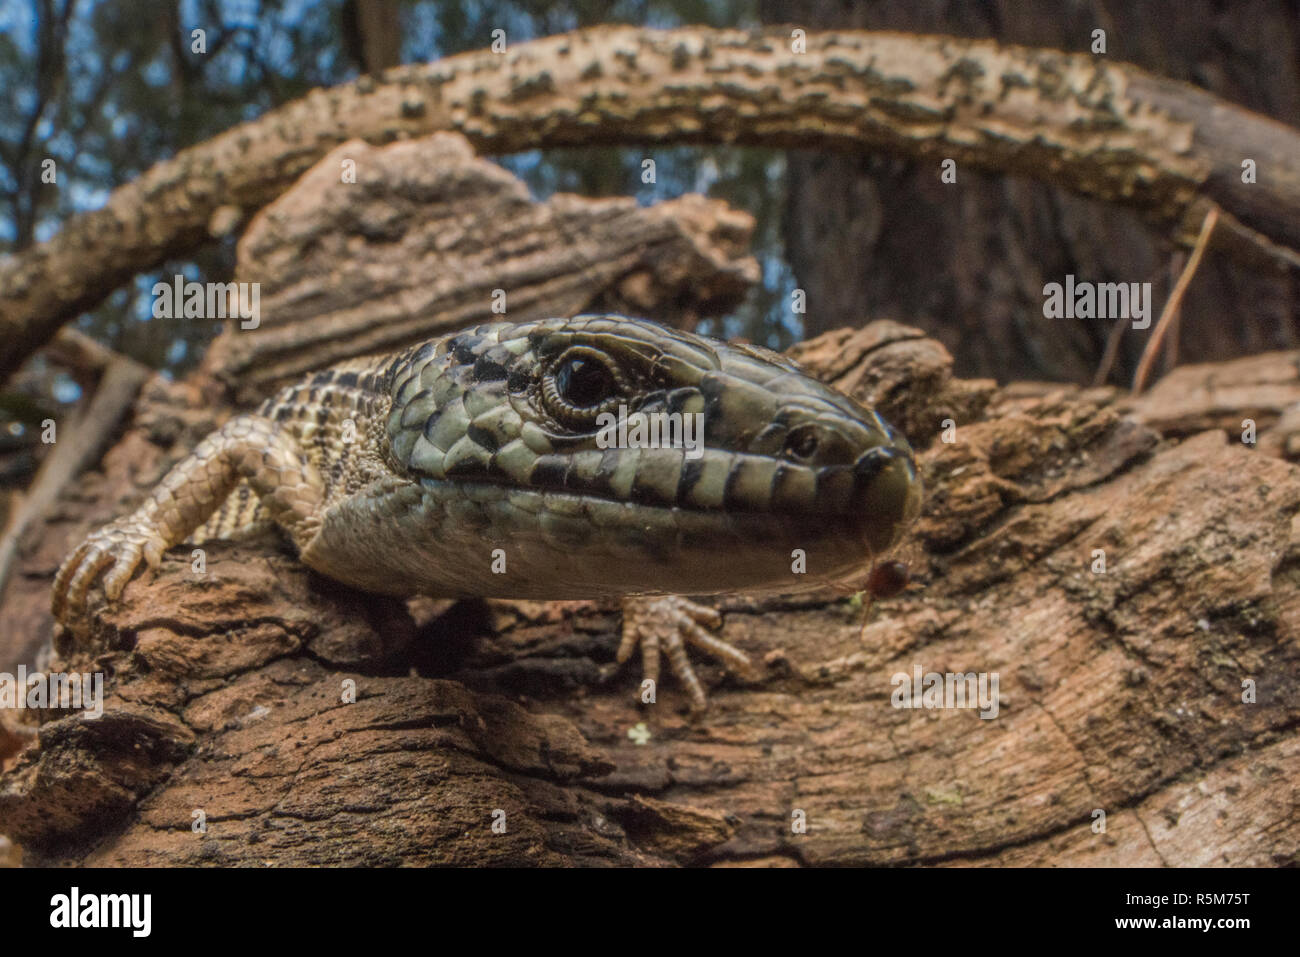 San Francisco Alligator Lizard (Elgaria coerulea coerulea), eine Unterart des Nördlichen krokodil Echse, die endemisch ist in der Bay Area in Kalifornien. Stockfoto